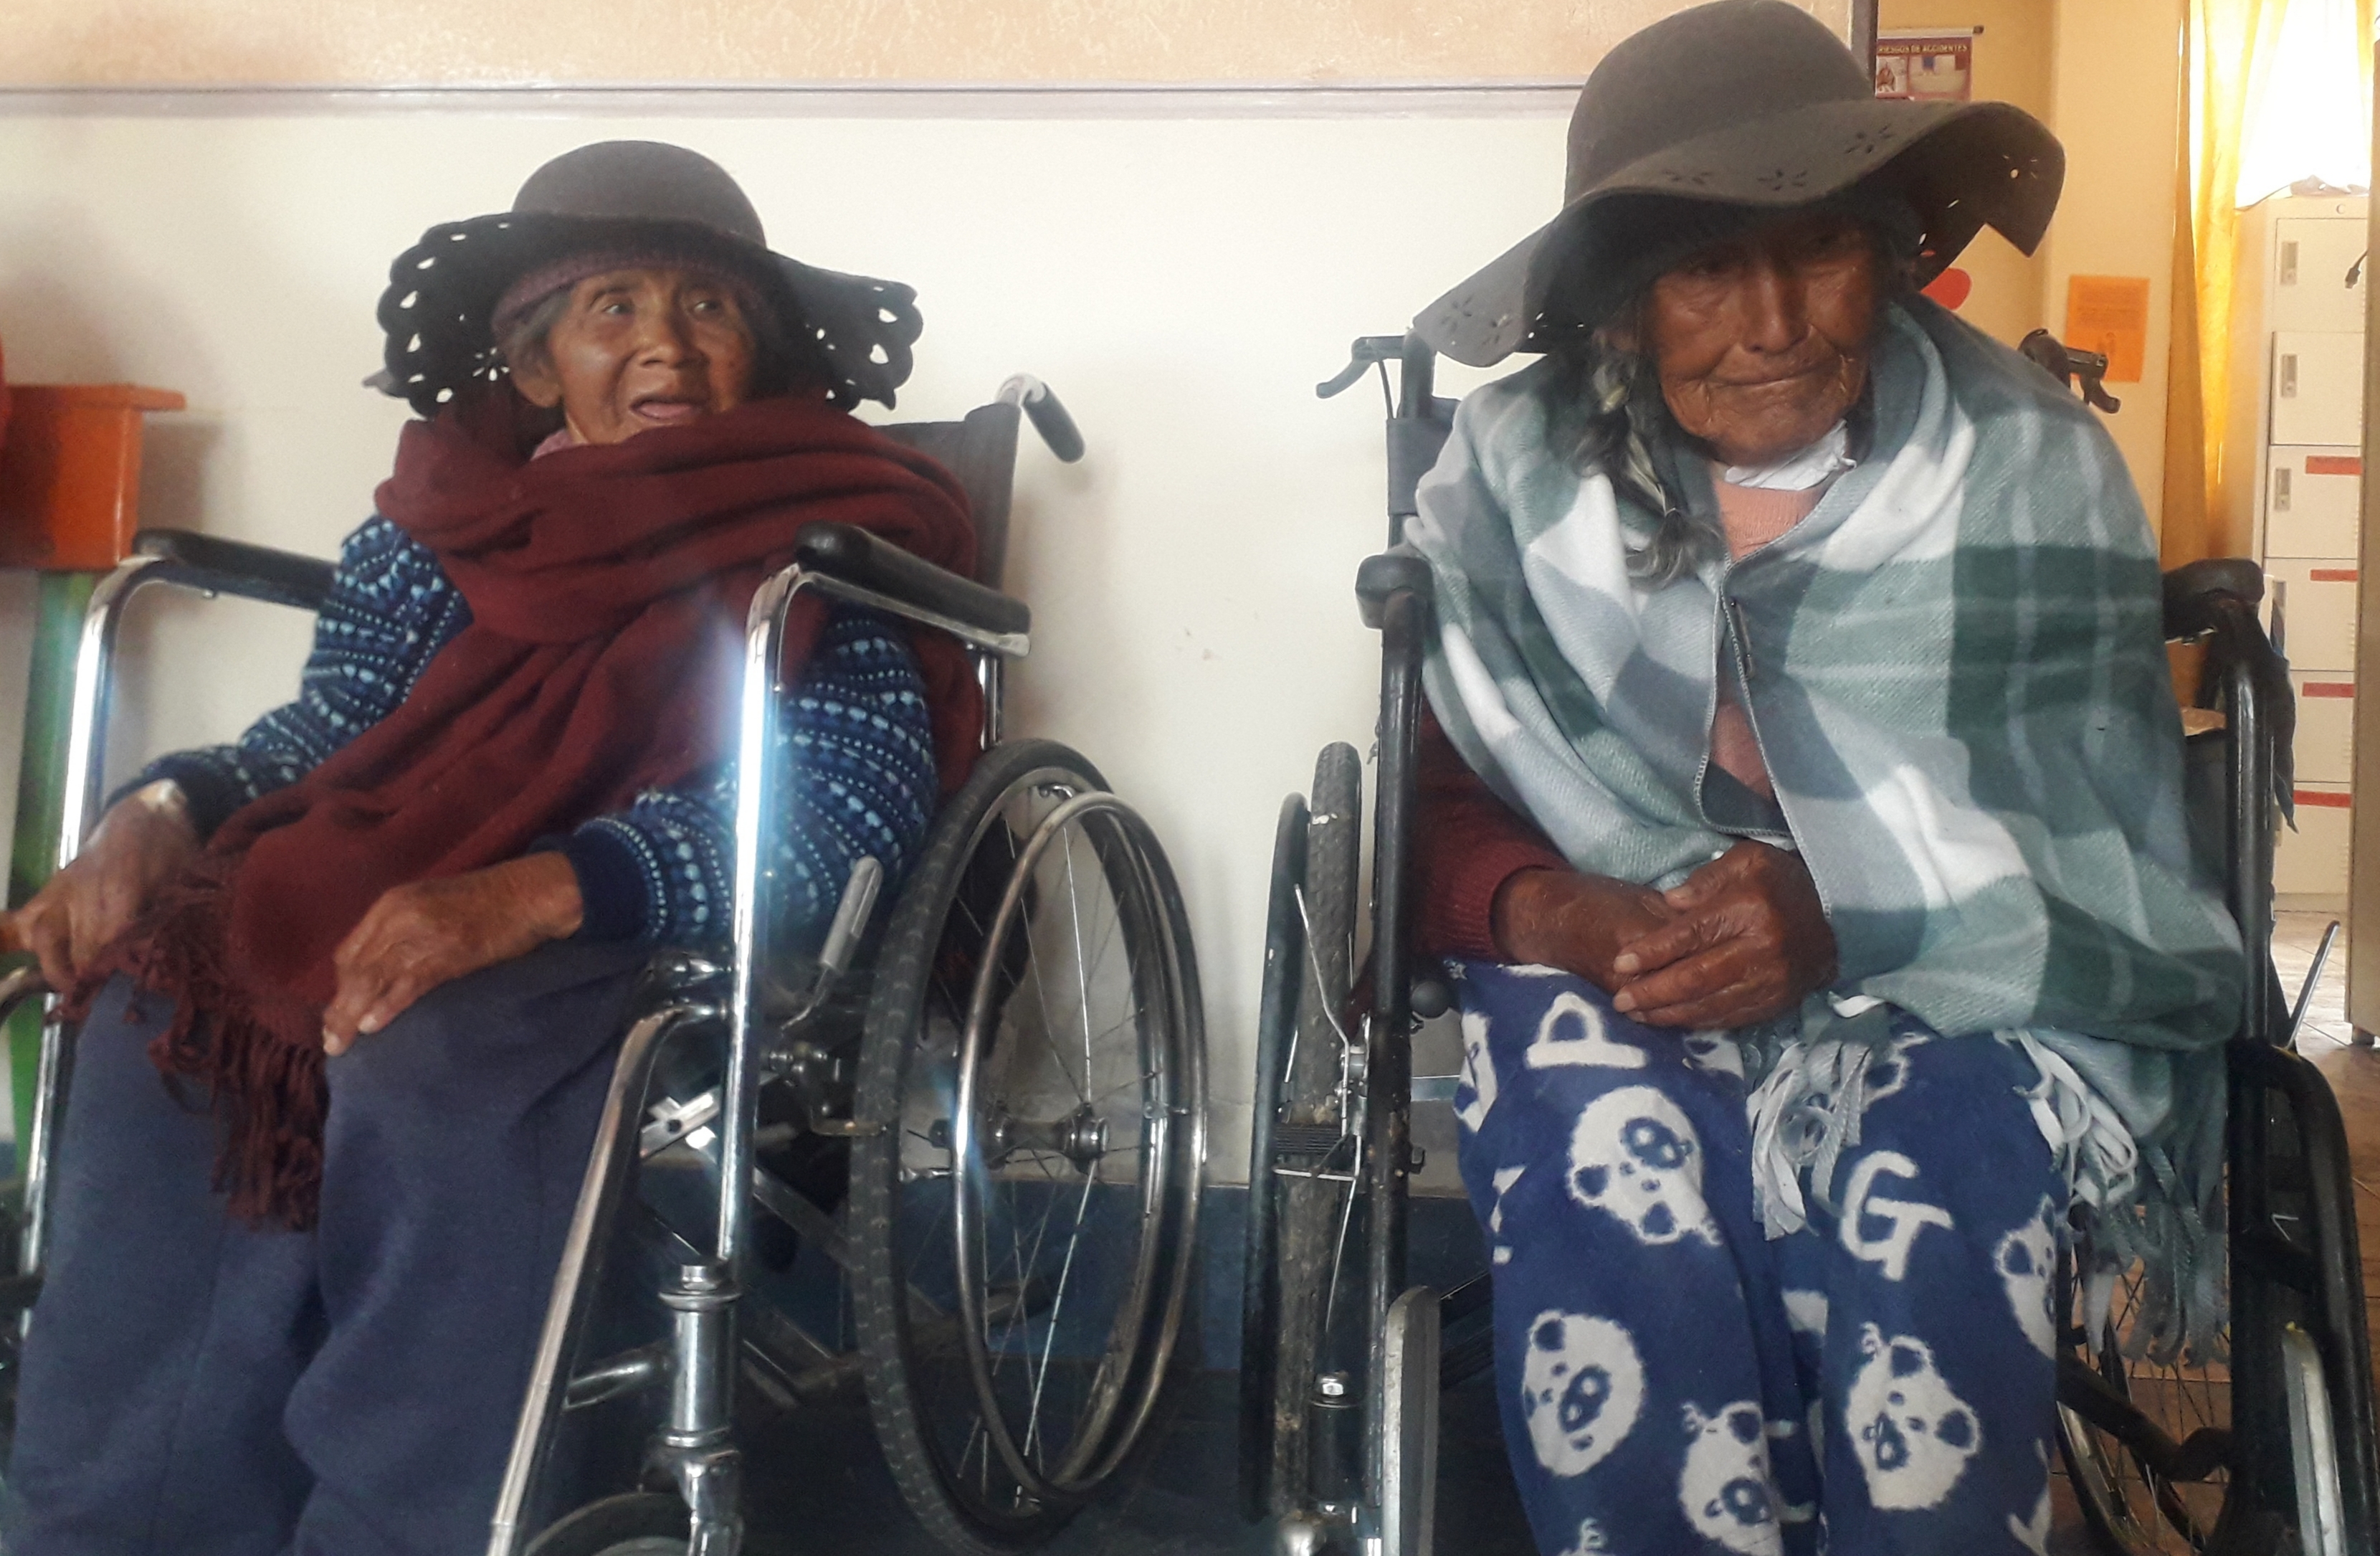 La Defensoría del Pueblo verifica el estado de salud, alimentación y bienestar de 23 adultos mayores en la Casa Hogar San Martín de El Alto